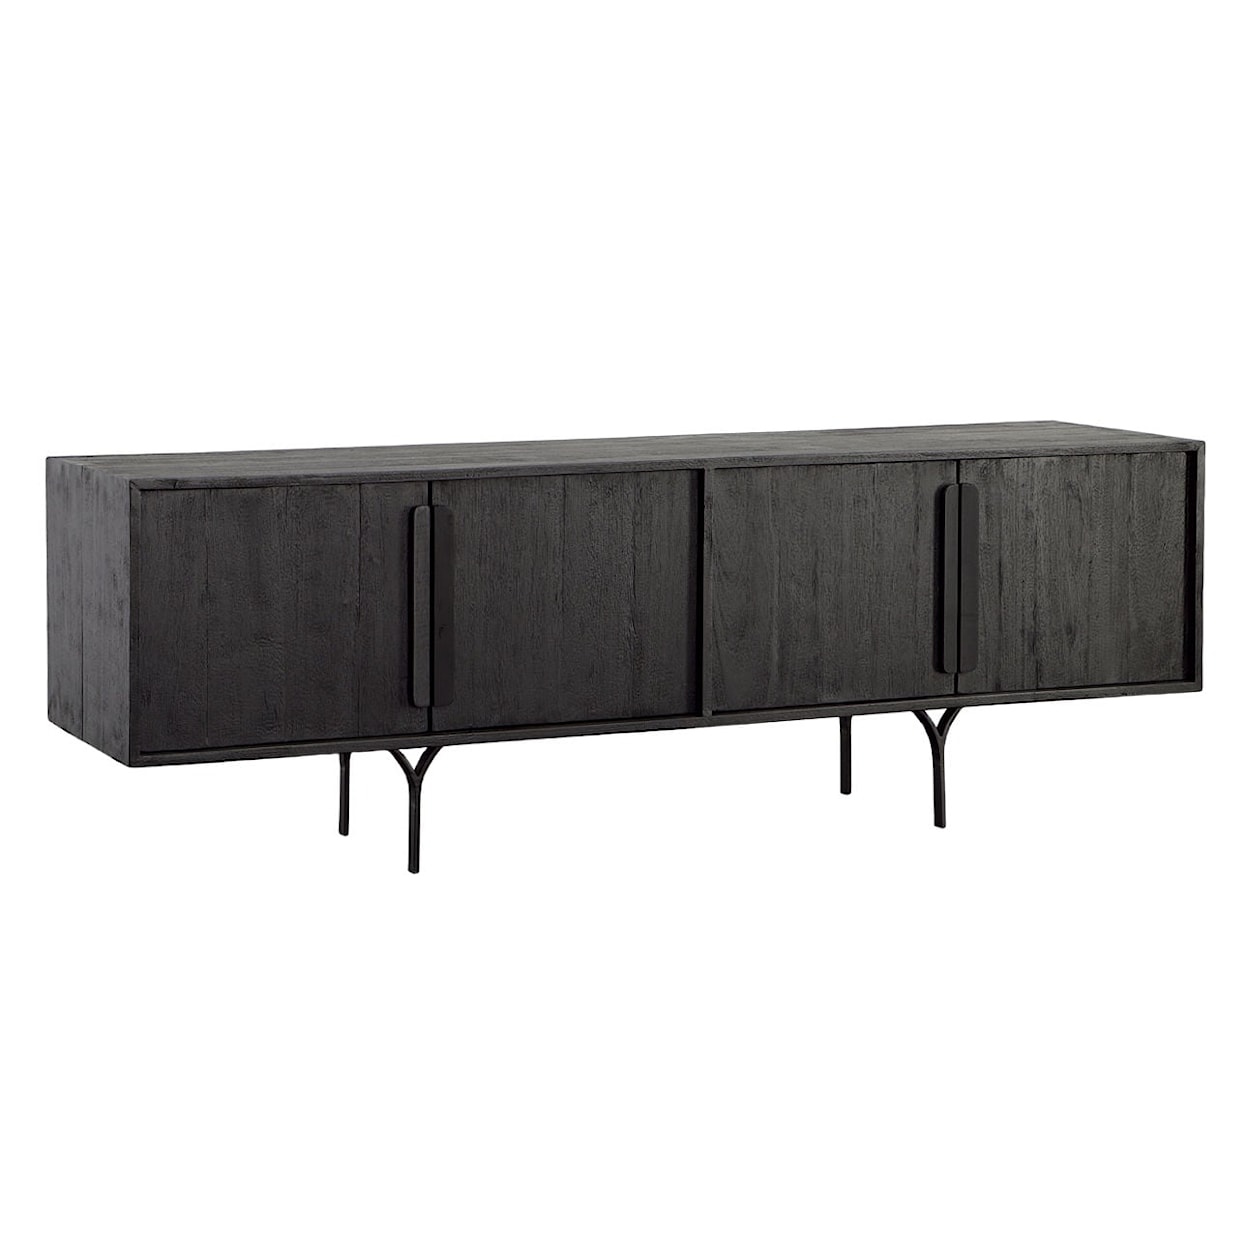 Dovetail Furniture Rivington Sofa Table